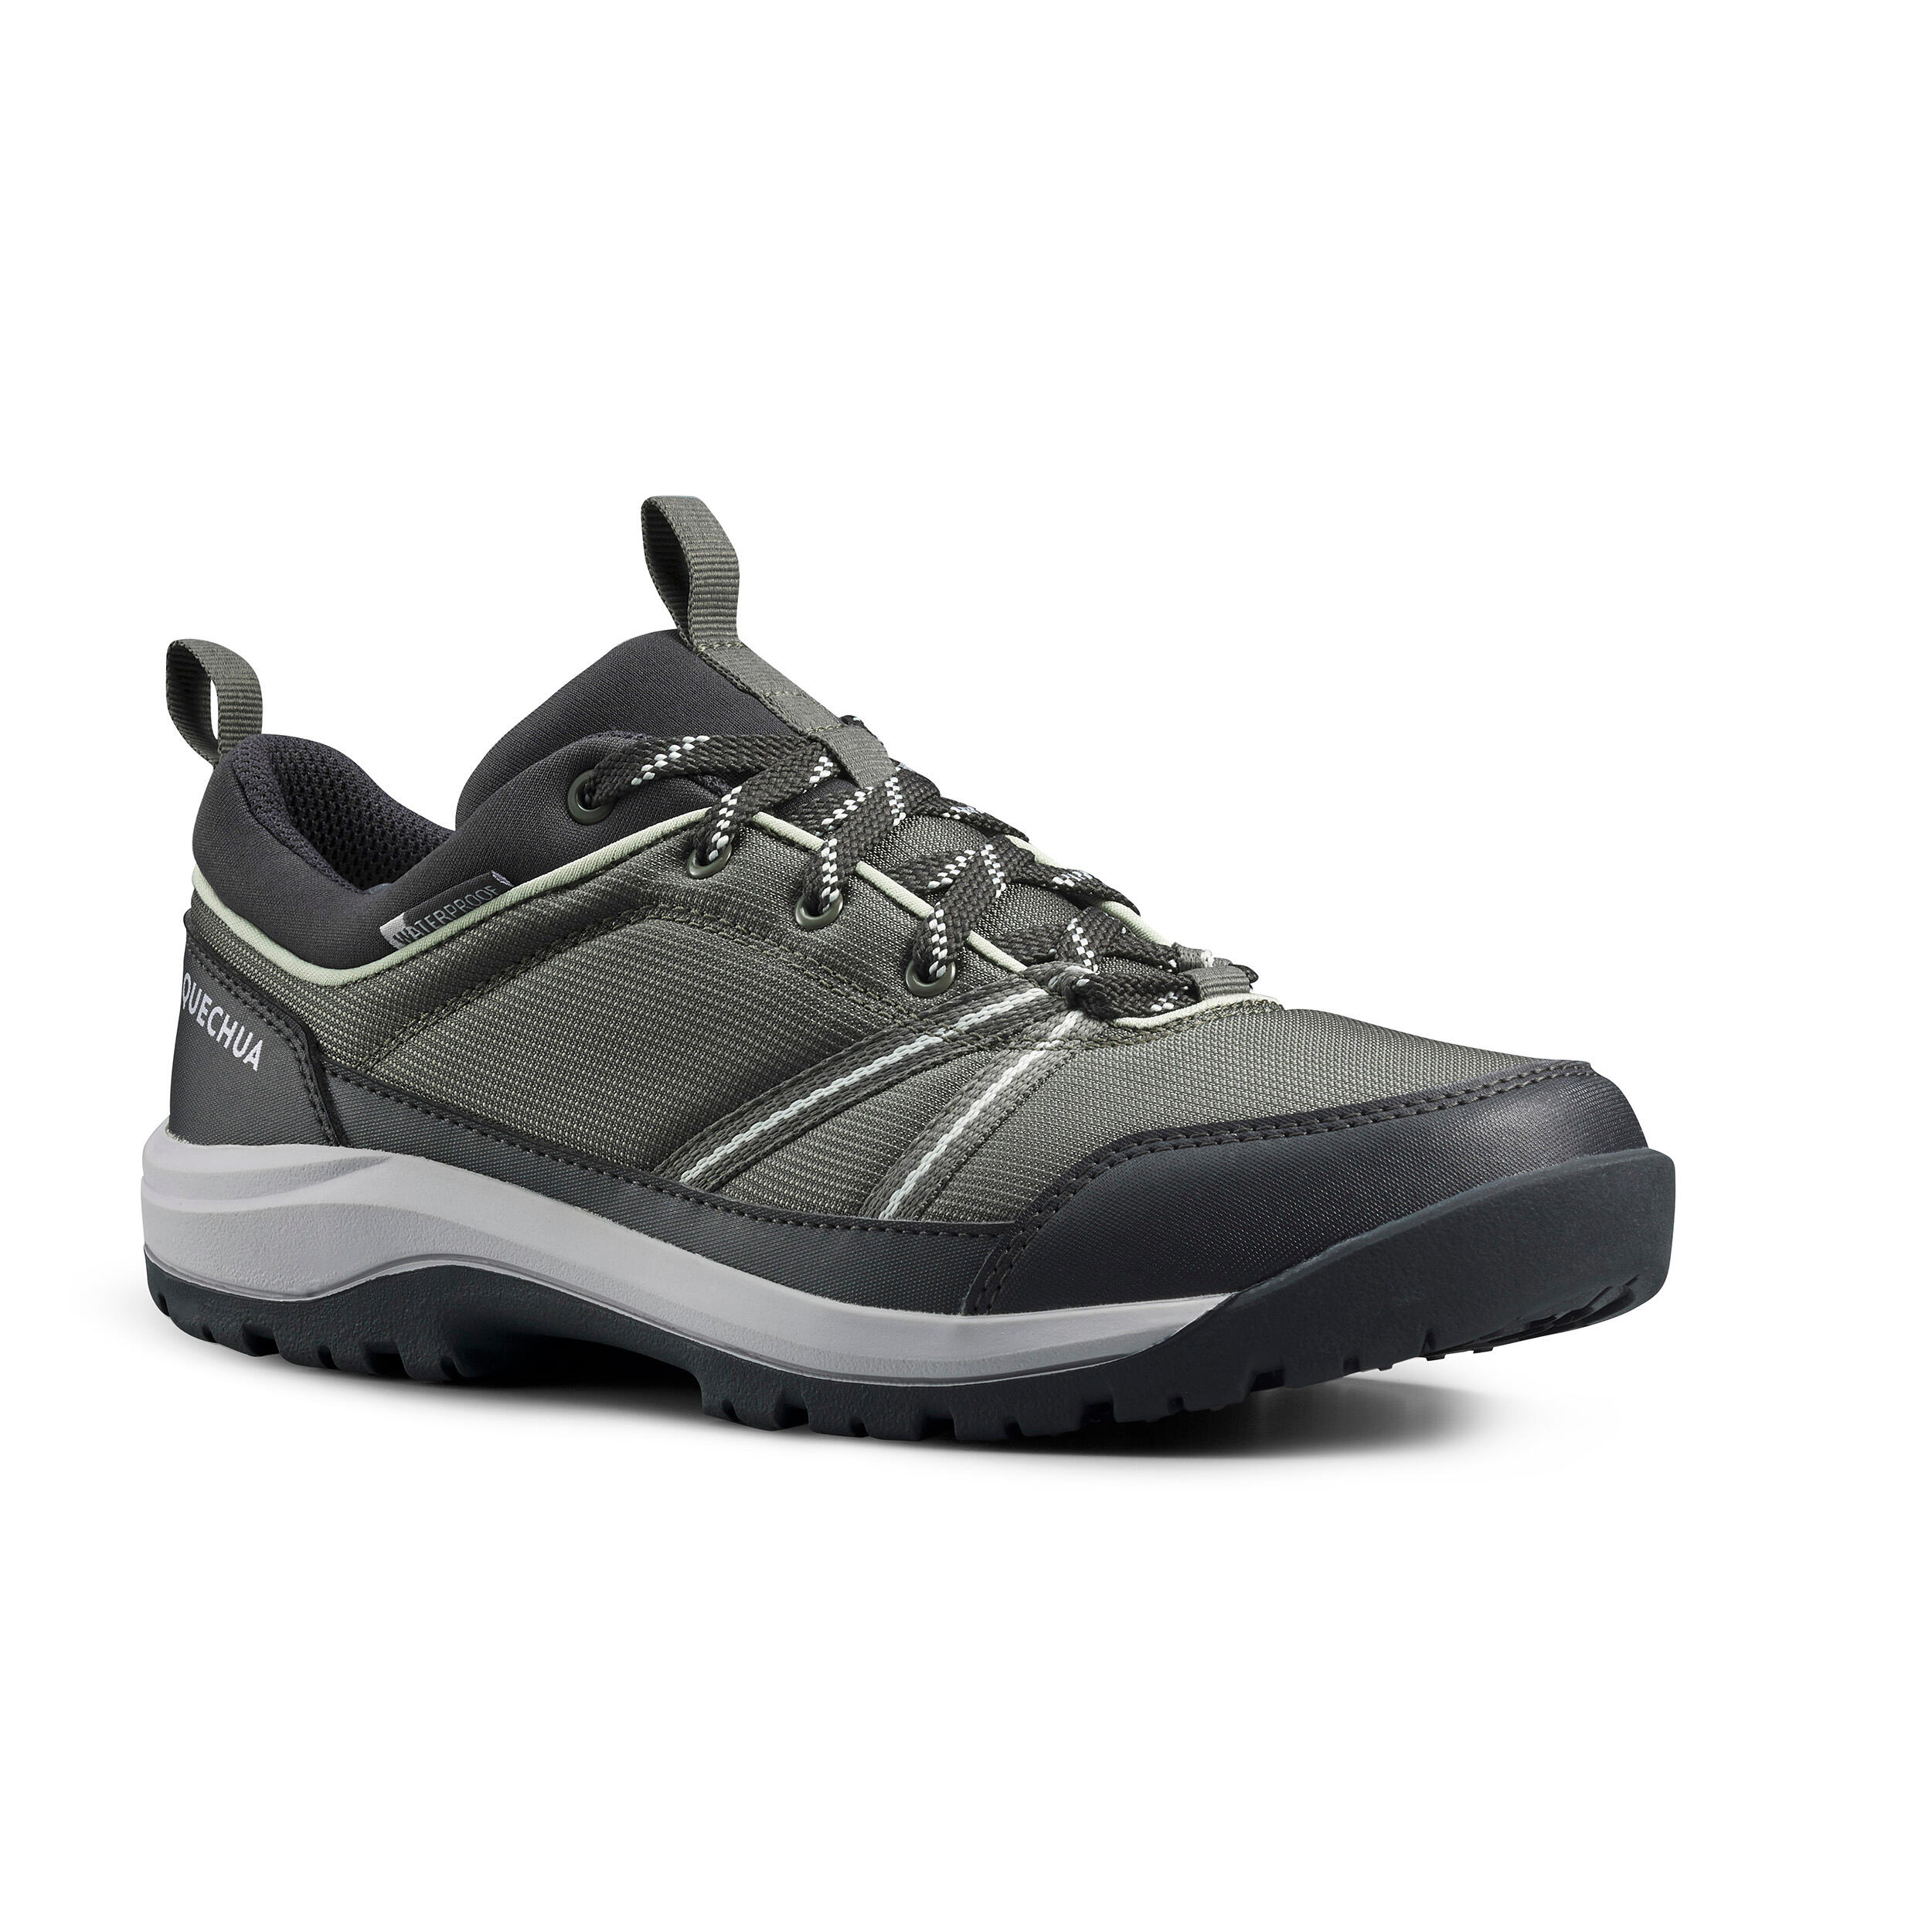 Women's Low-rise Waterproof Hiking Shoes - NH100 WP 2/10